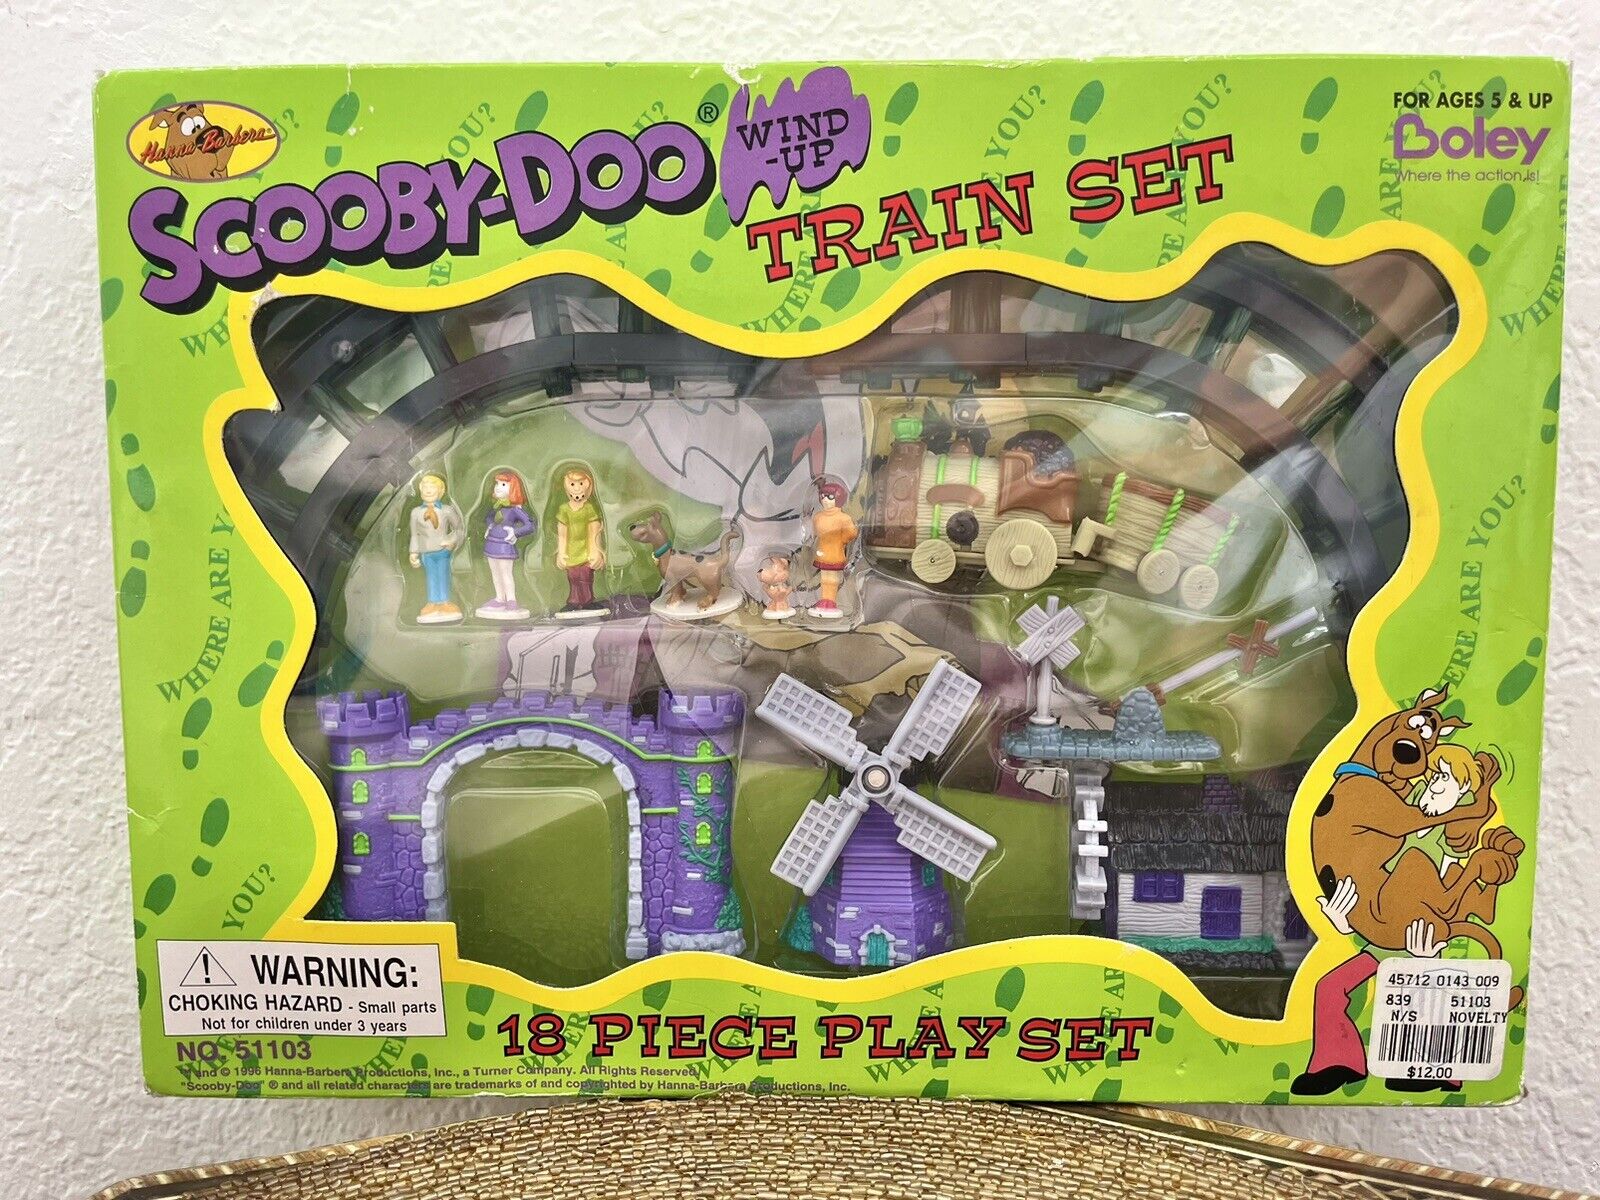 Boley Scooby-Doo Wind-Up Train Set 1996 No.51103 *BOXED* READ